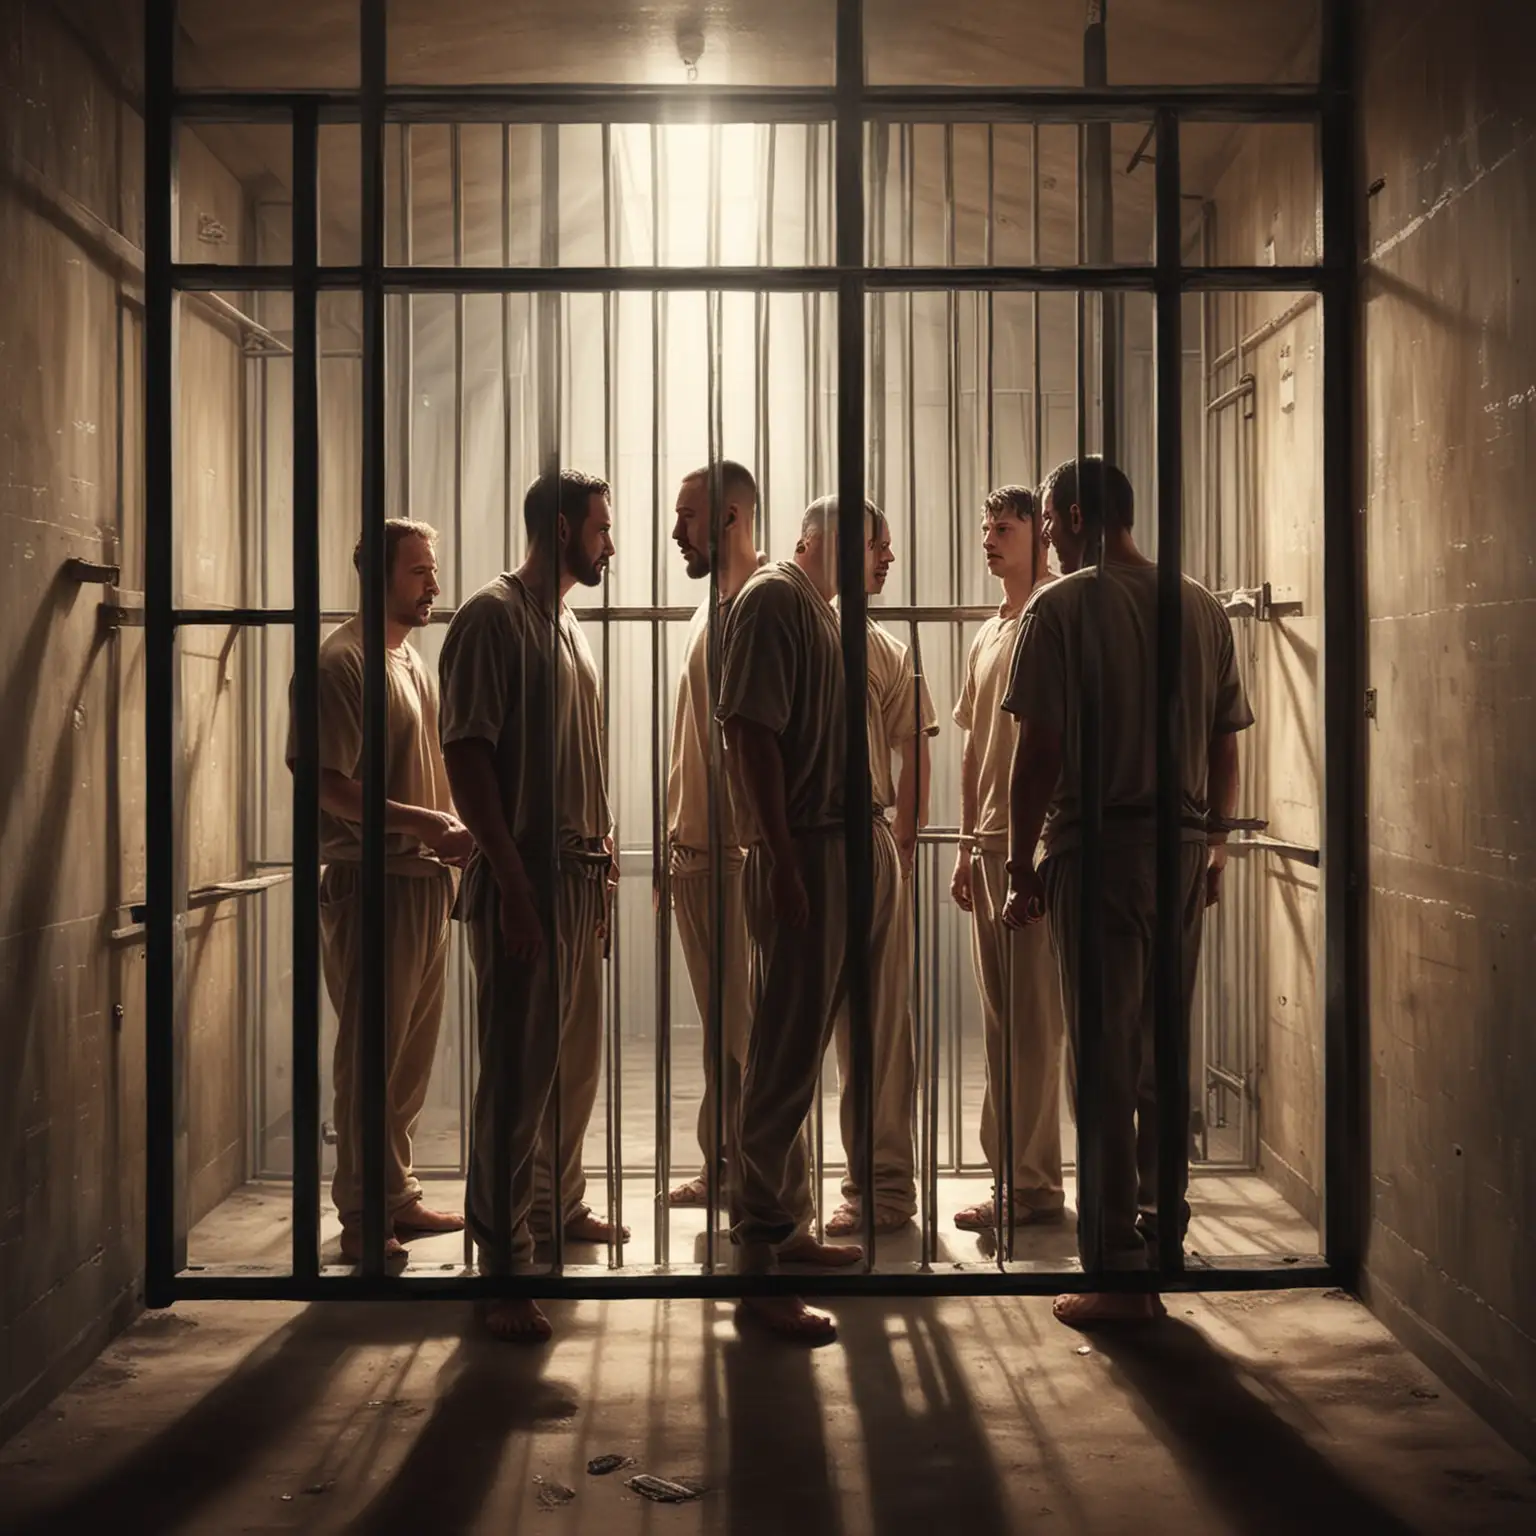 drei Gefangene in Gefängniszelle, licht scheint durchs gitter
